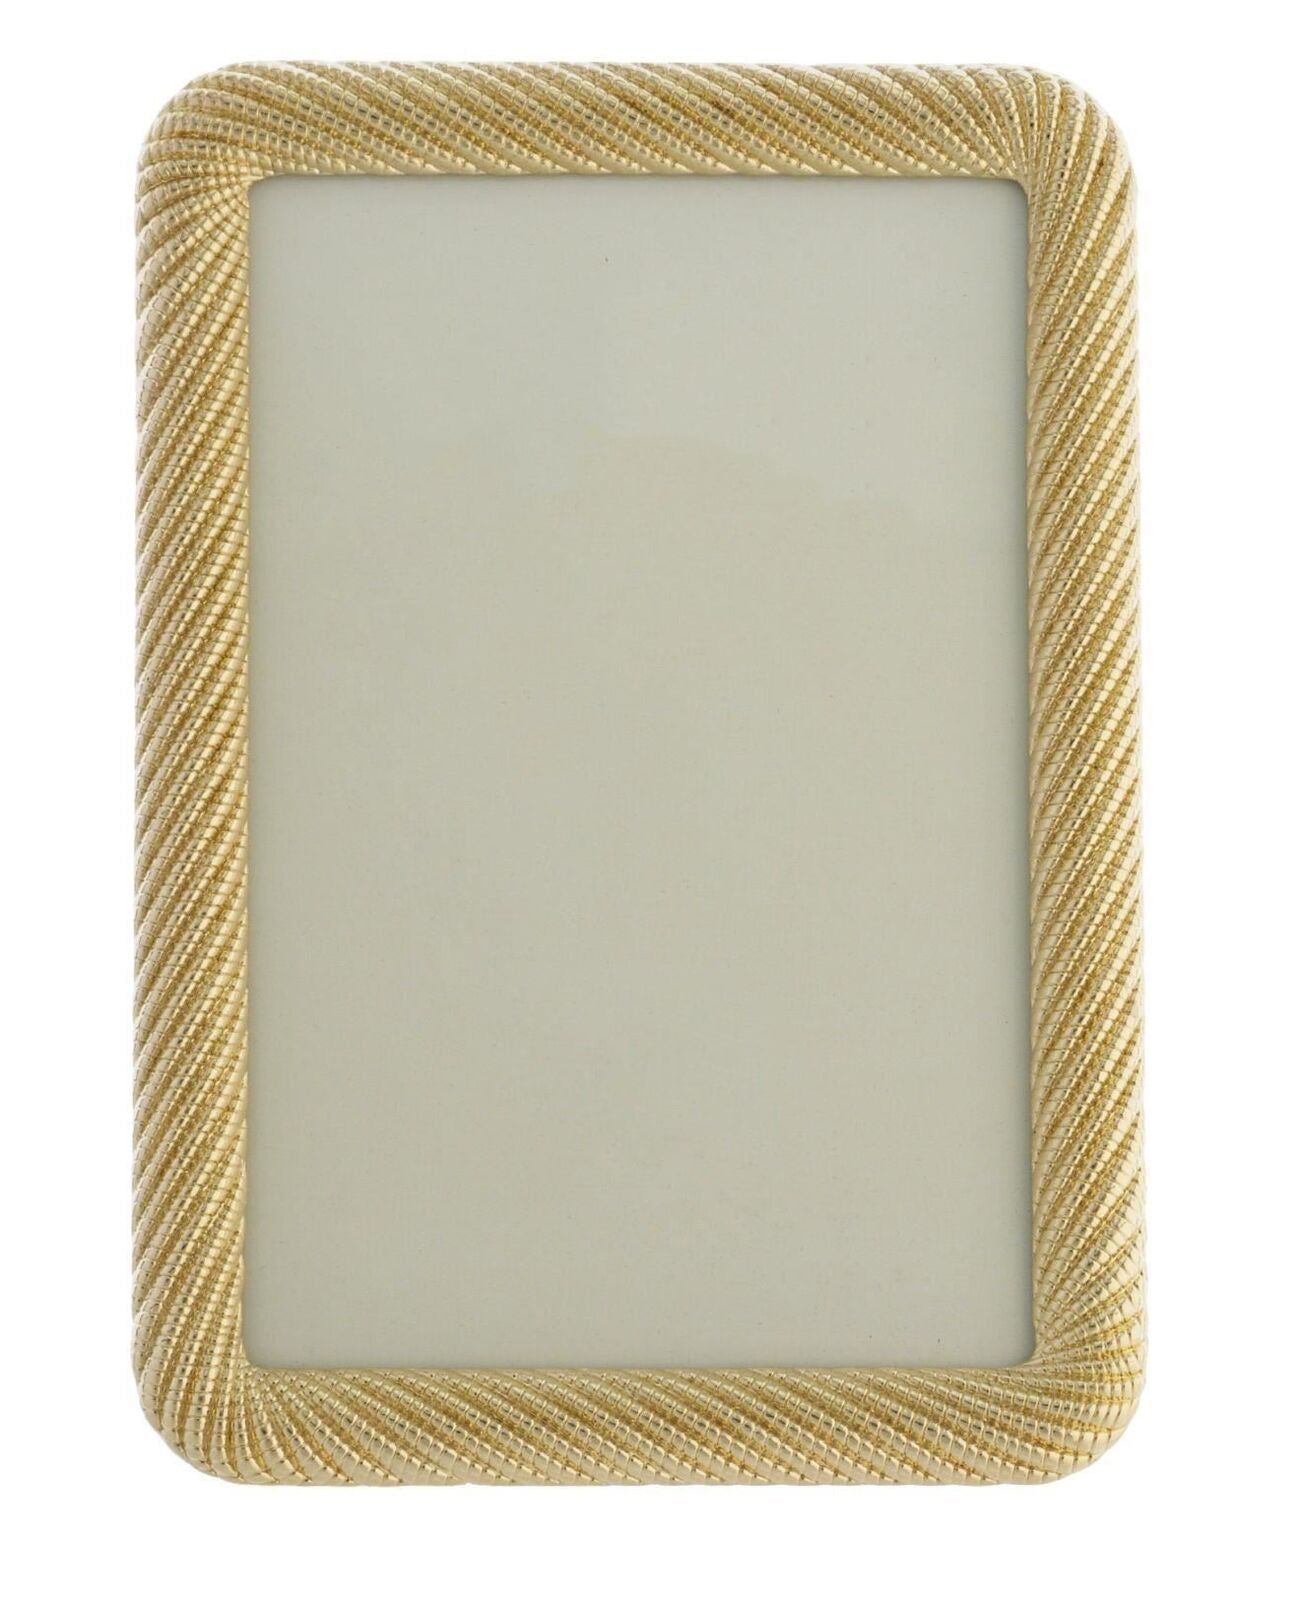 Ava Gold Frame 6x4